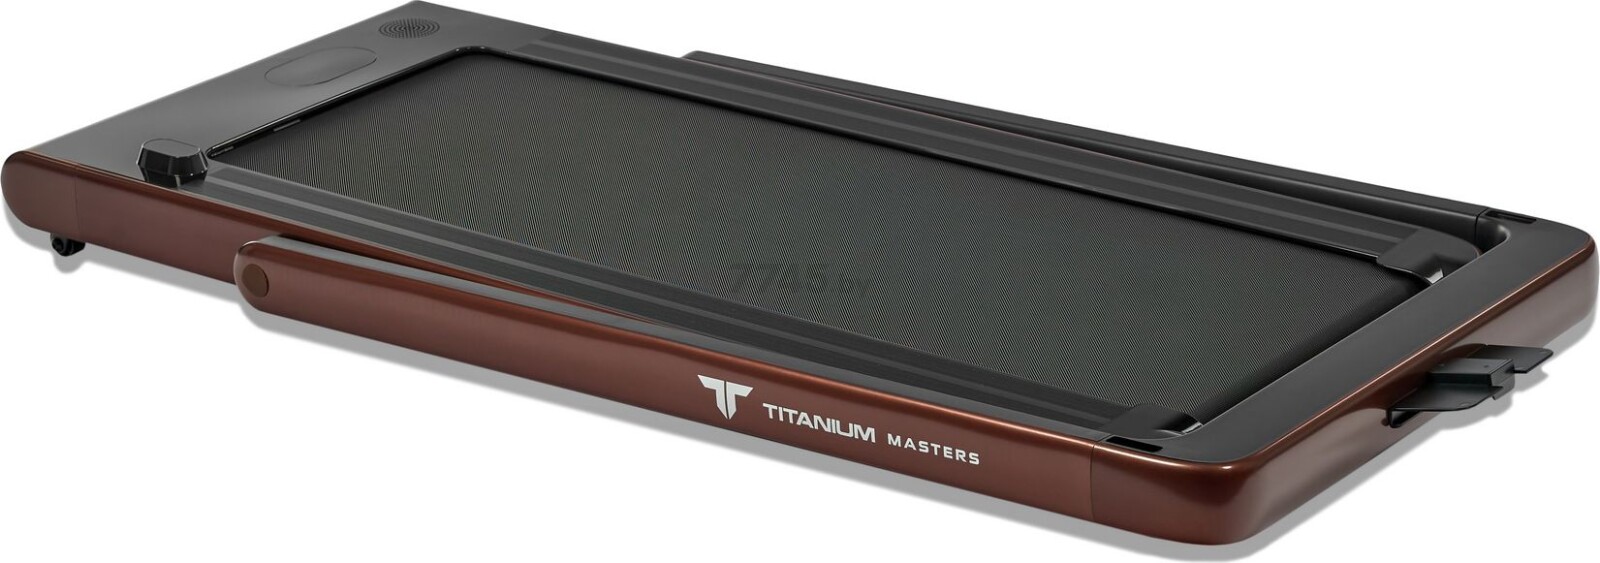 Беговая дорожка TITANIUM Masters Slimtech C10 коричневый - Фото 3